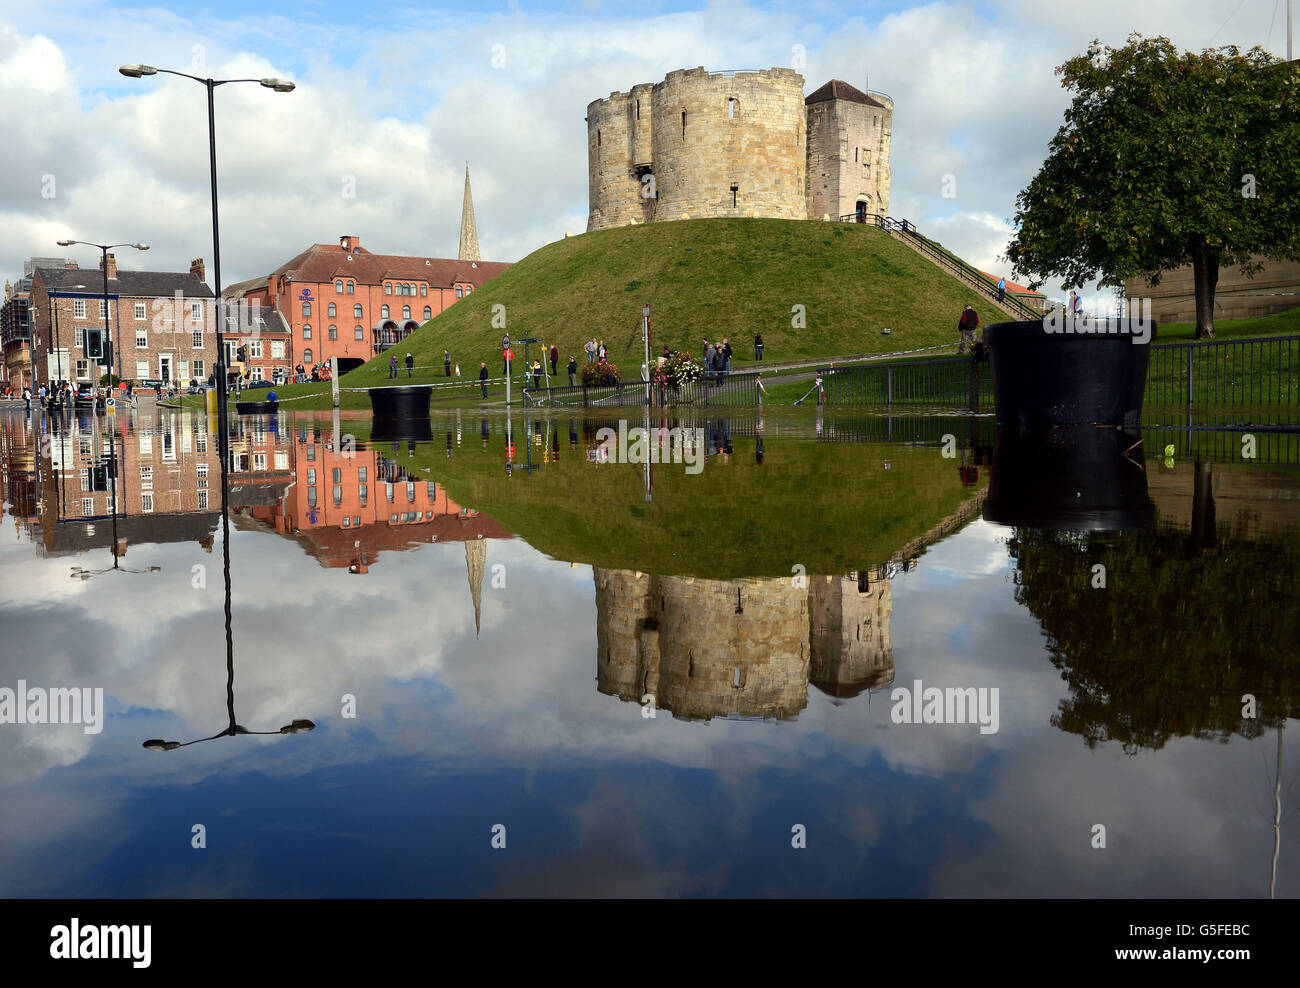 Clifford's Tower, eine der berühmten antiken Attraktionen von York, spiegelt sich im Flutwasser wider, das heute Morgen die umliegenden Straßen des Stadtzentrums füllte. Stockfoto